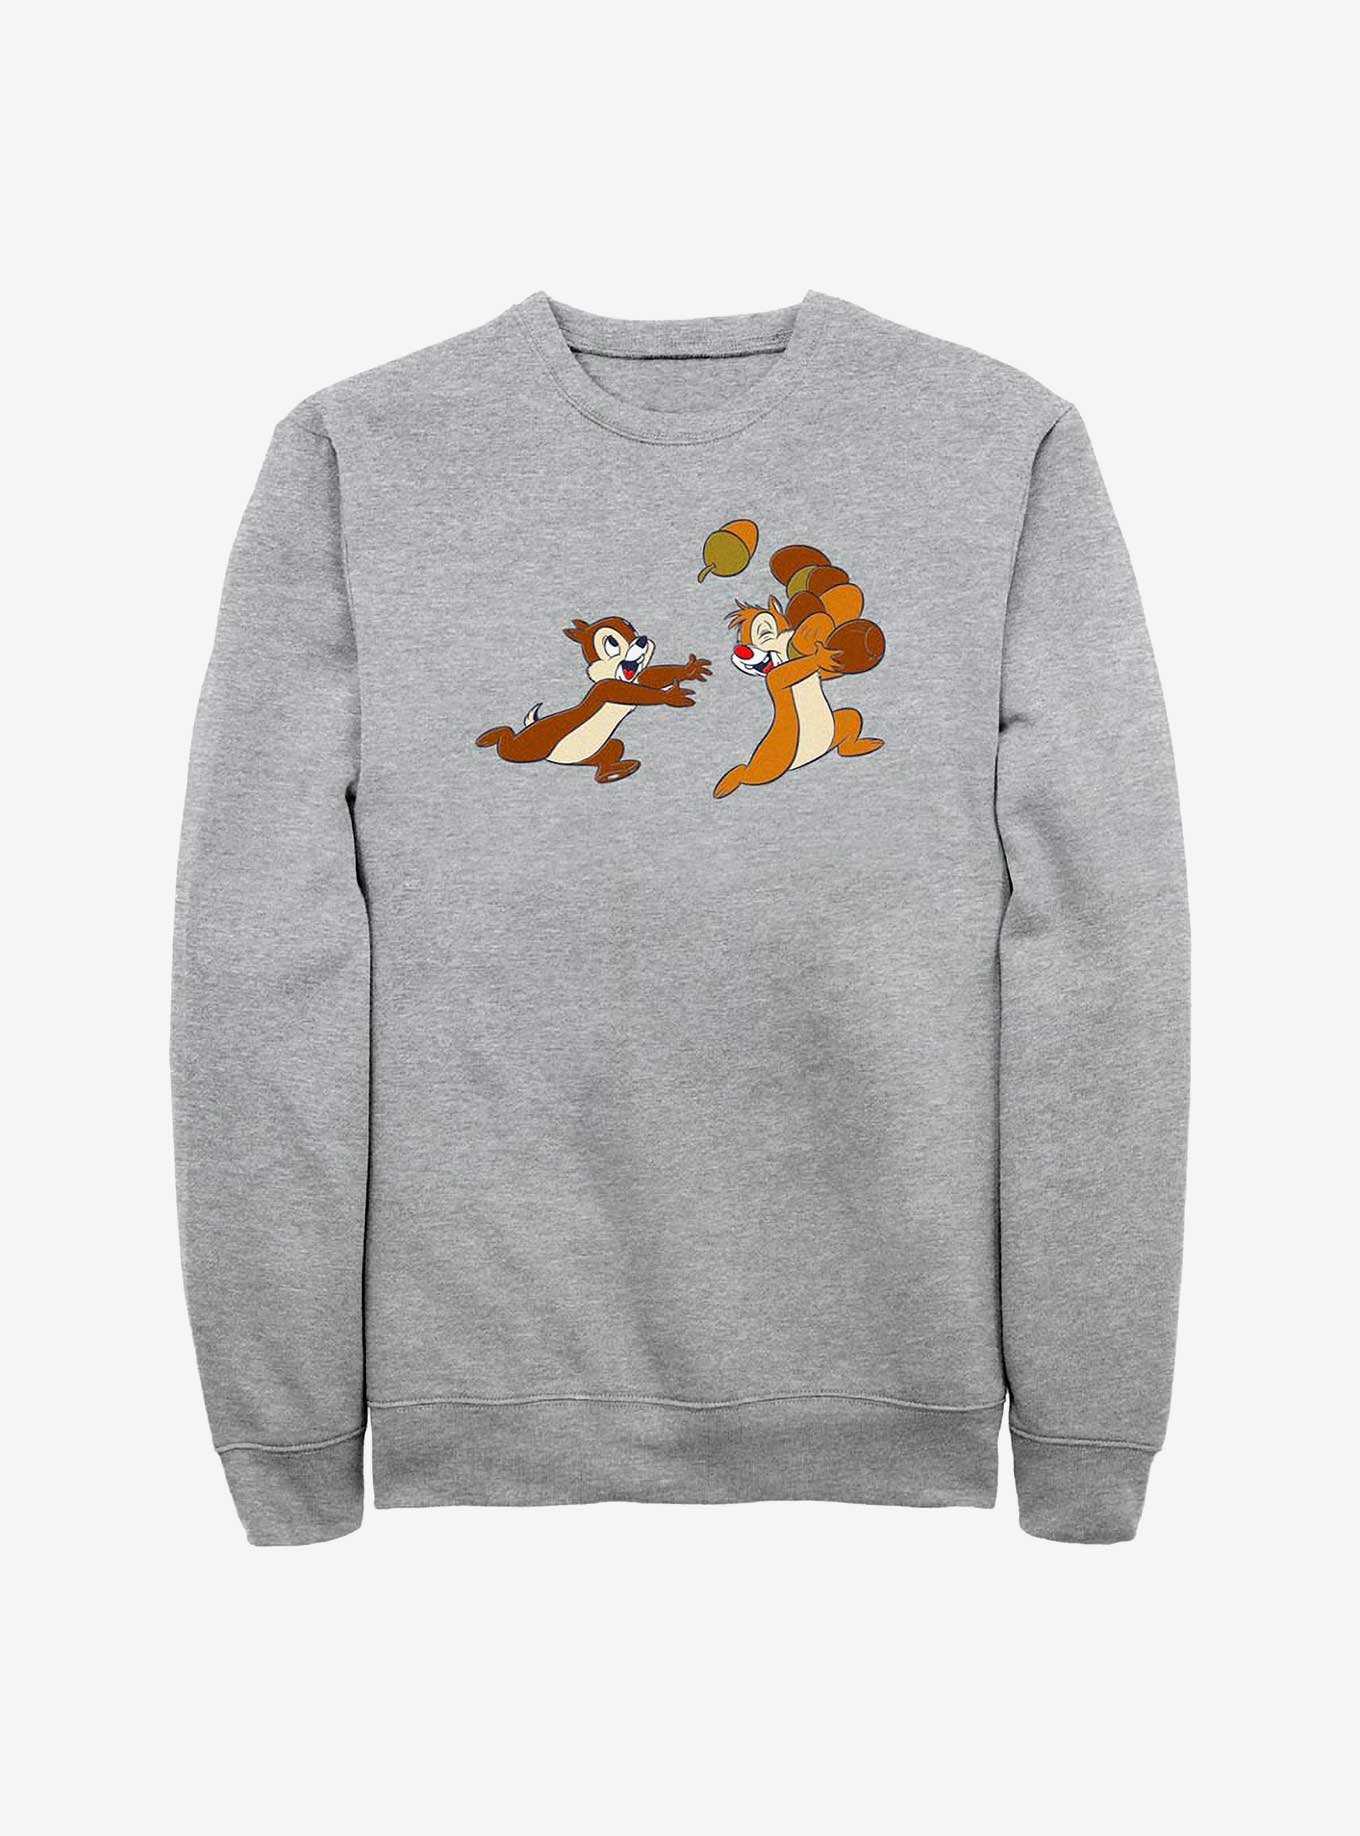 Disney Chip 'N' Dale Acorn Run Sweatshirt, , hi-res